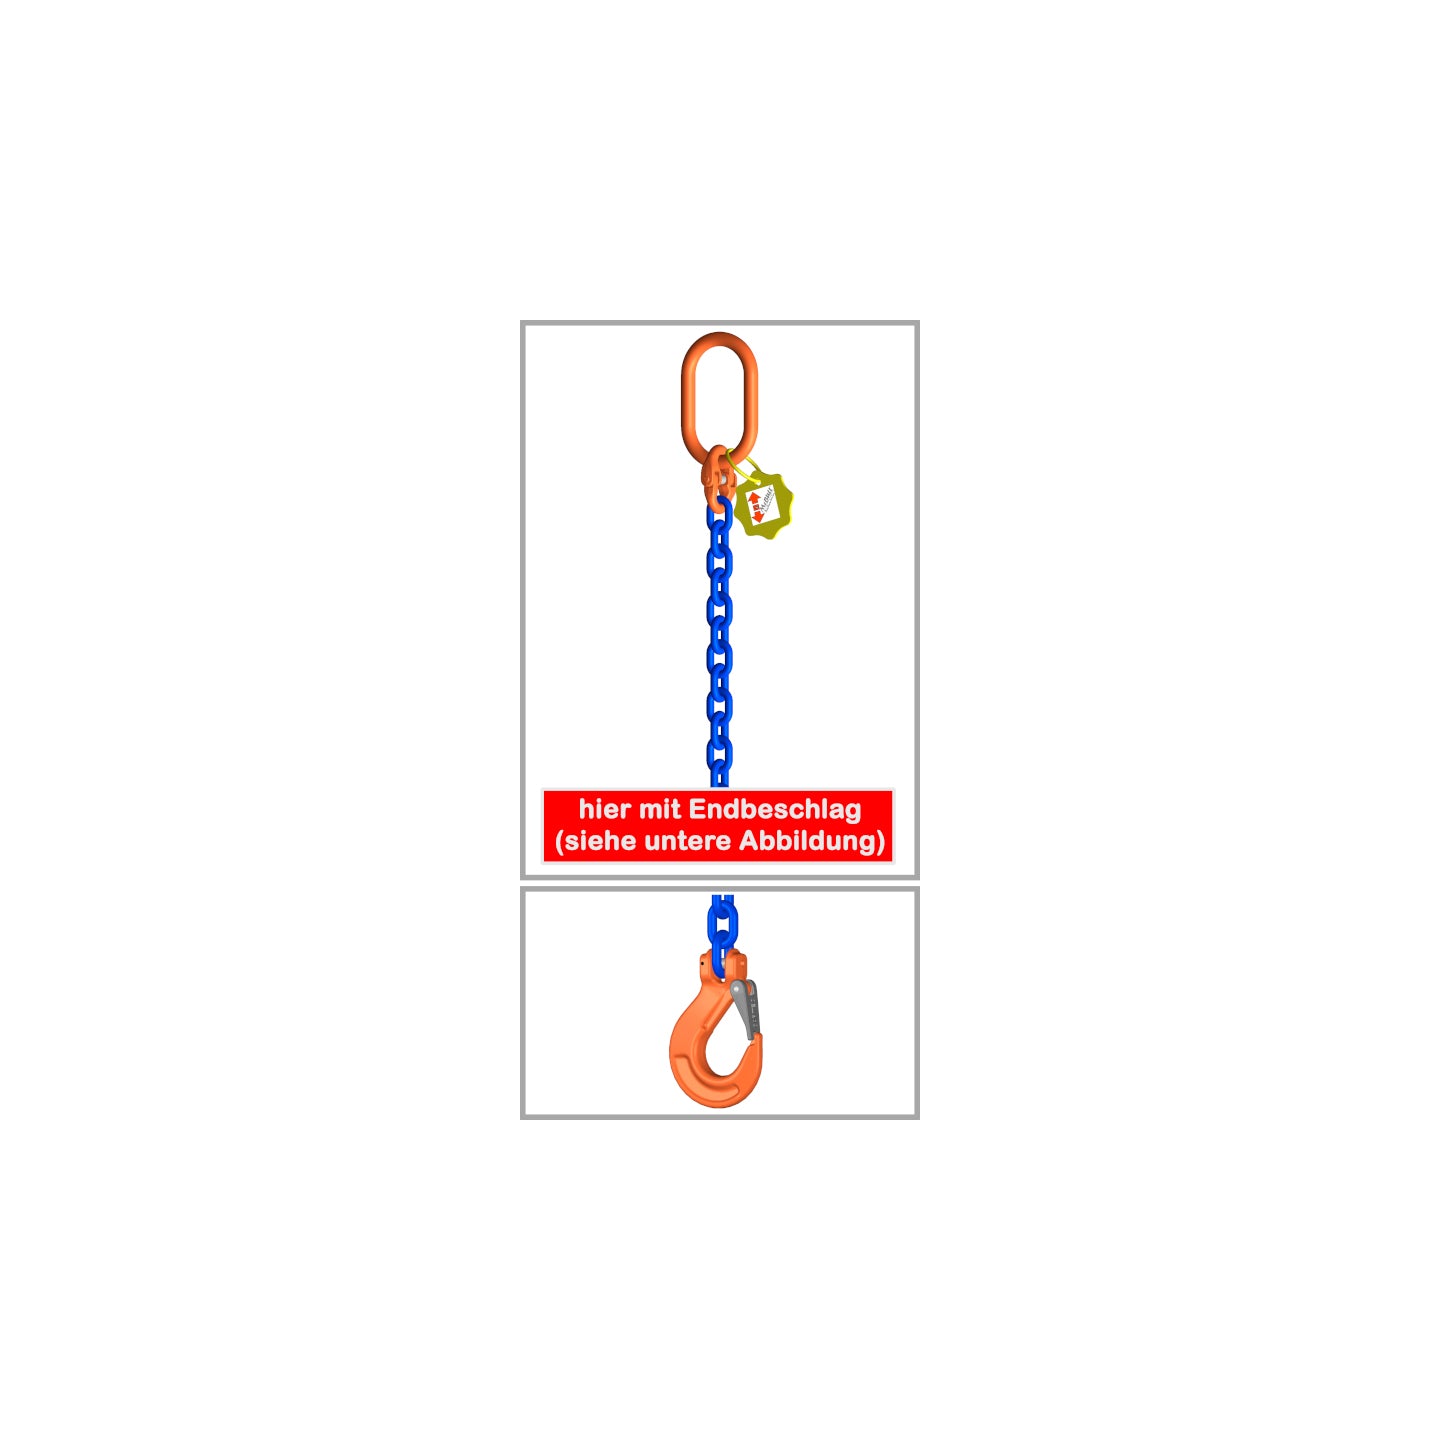 1-draads kettingband volgens EN 818-4 16 mm met speciale kwaliteitsketting zonder H-markering, kwaliteitsklasse 10